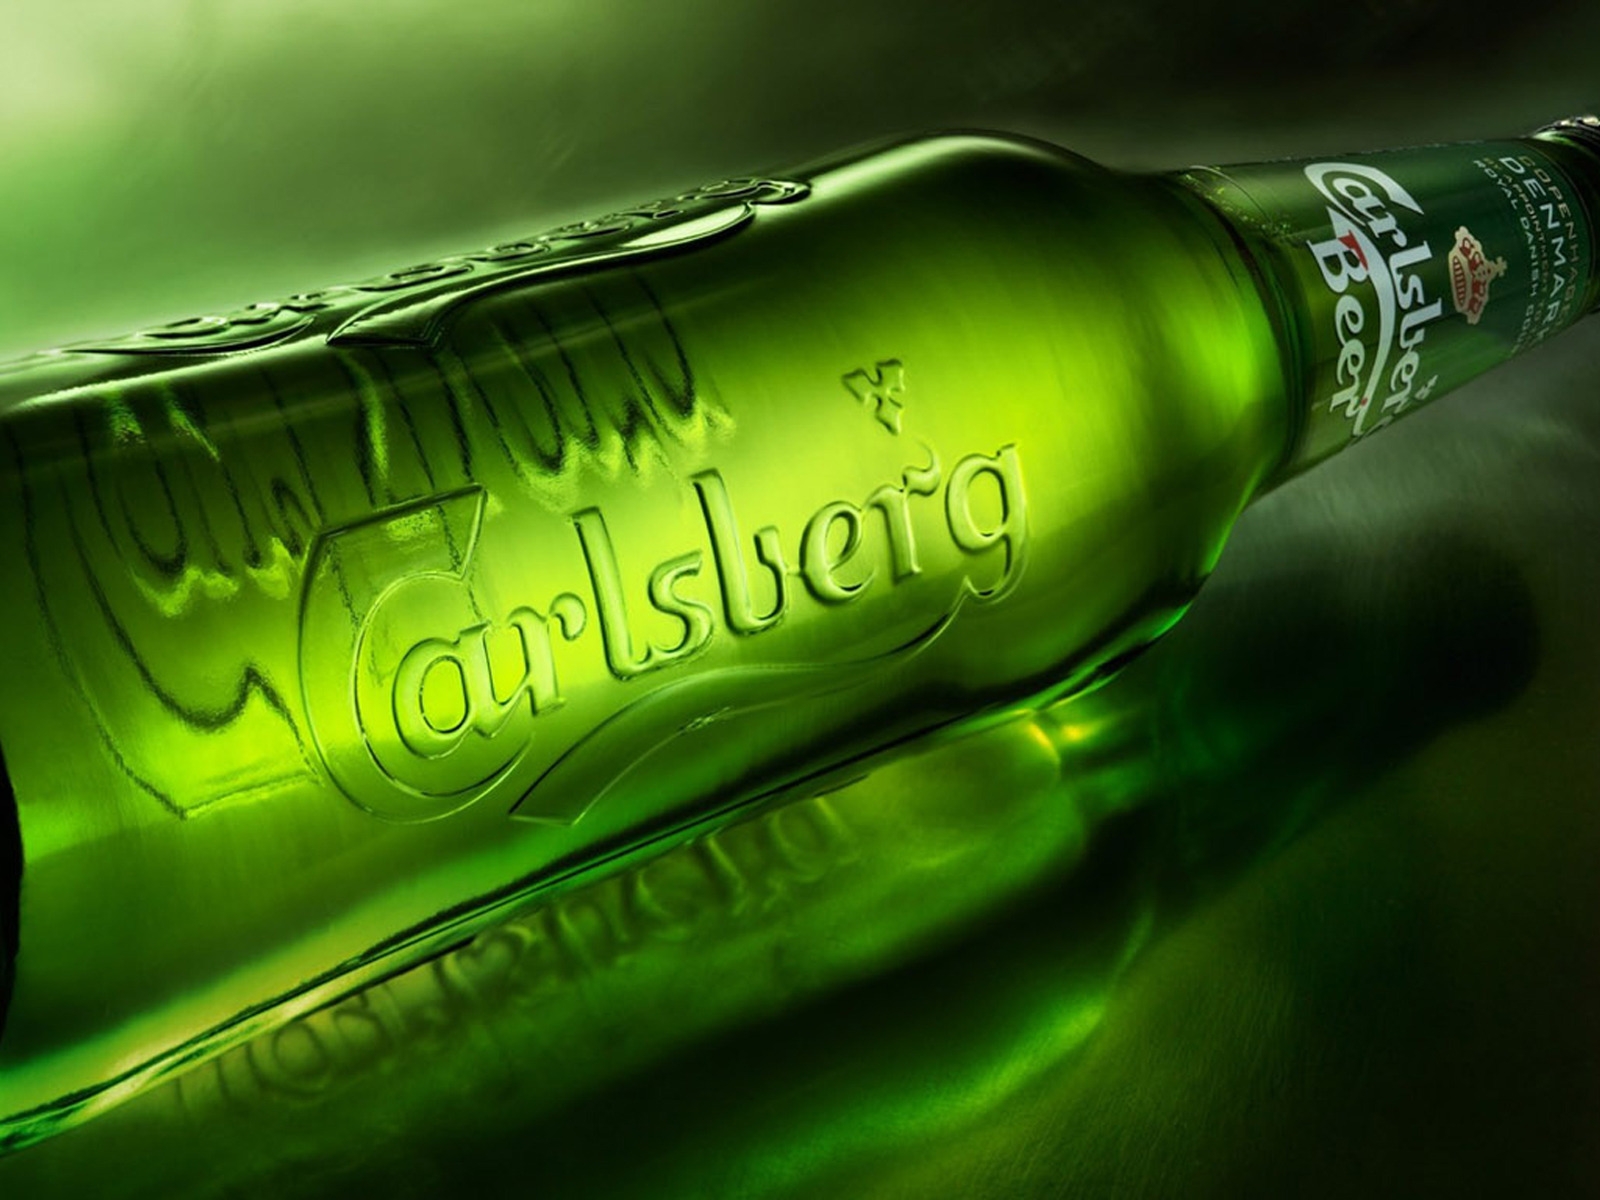 Carlsberg Bottle for 1600 x 1200 resolution